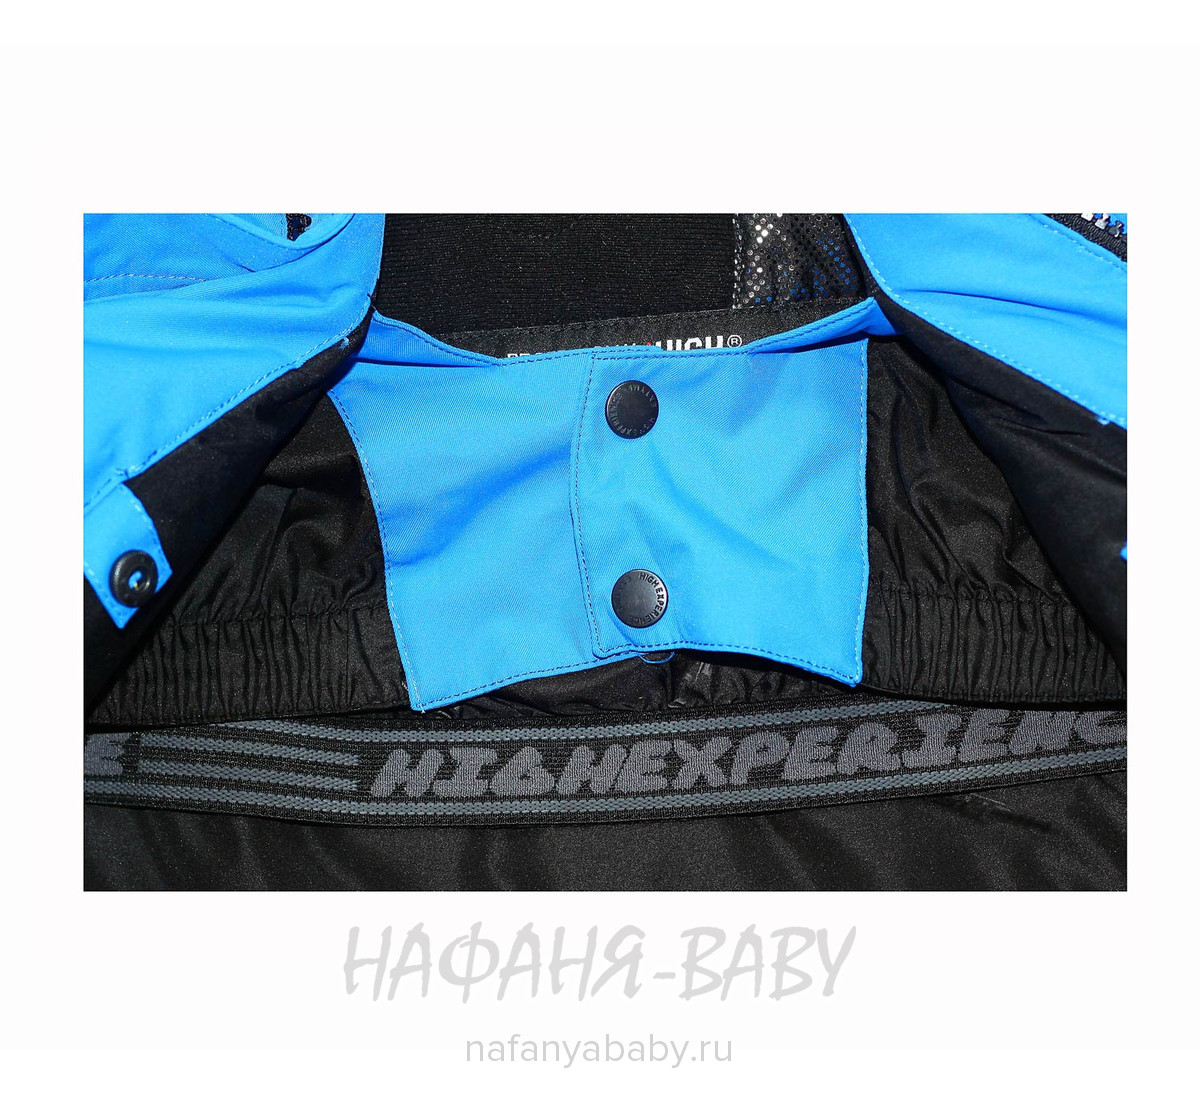 Детский горнолыжный костюм High Experience, купить в интернет магазине Нафаня. арт: 9168.